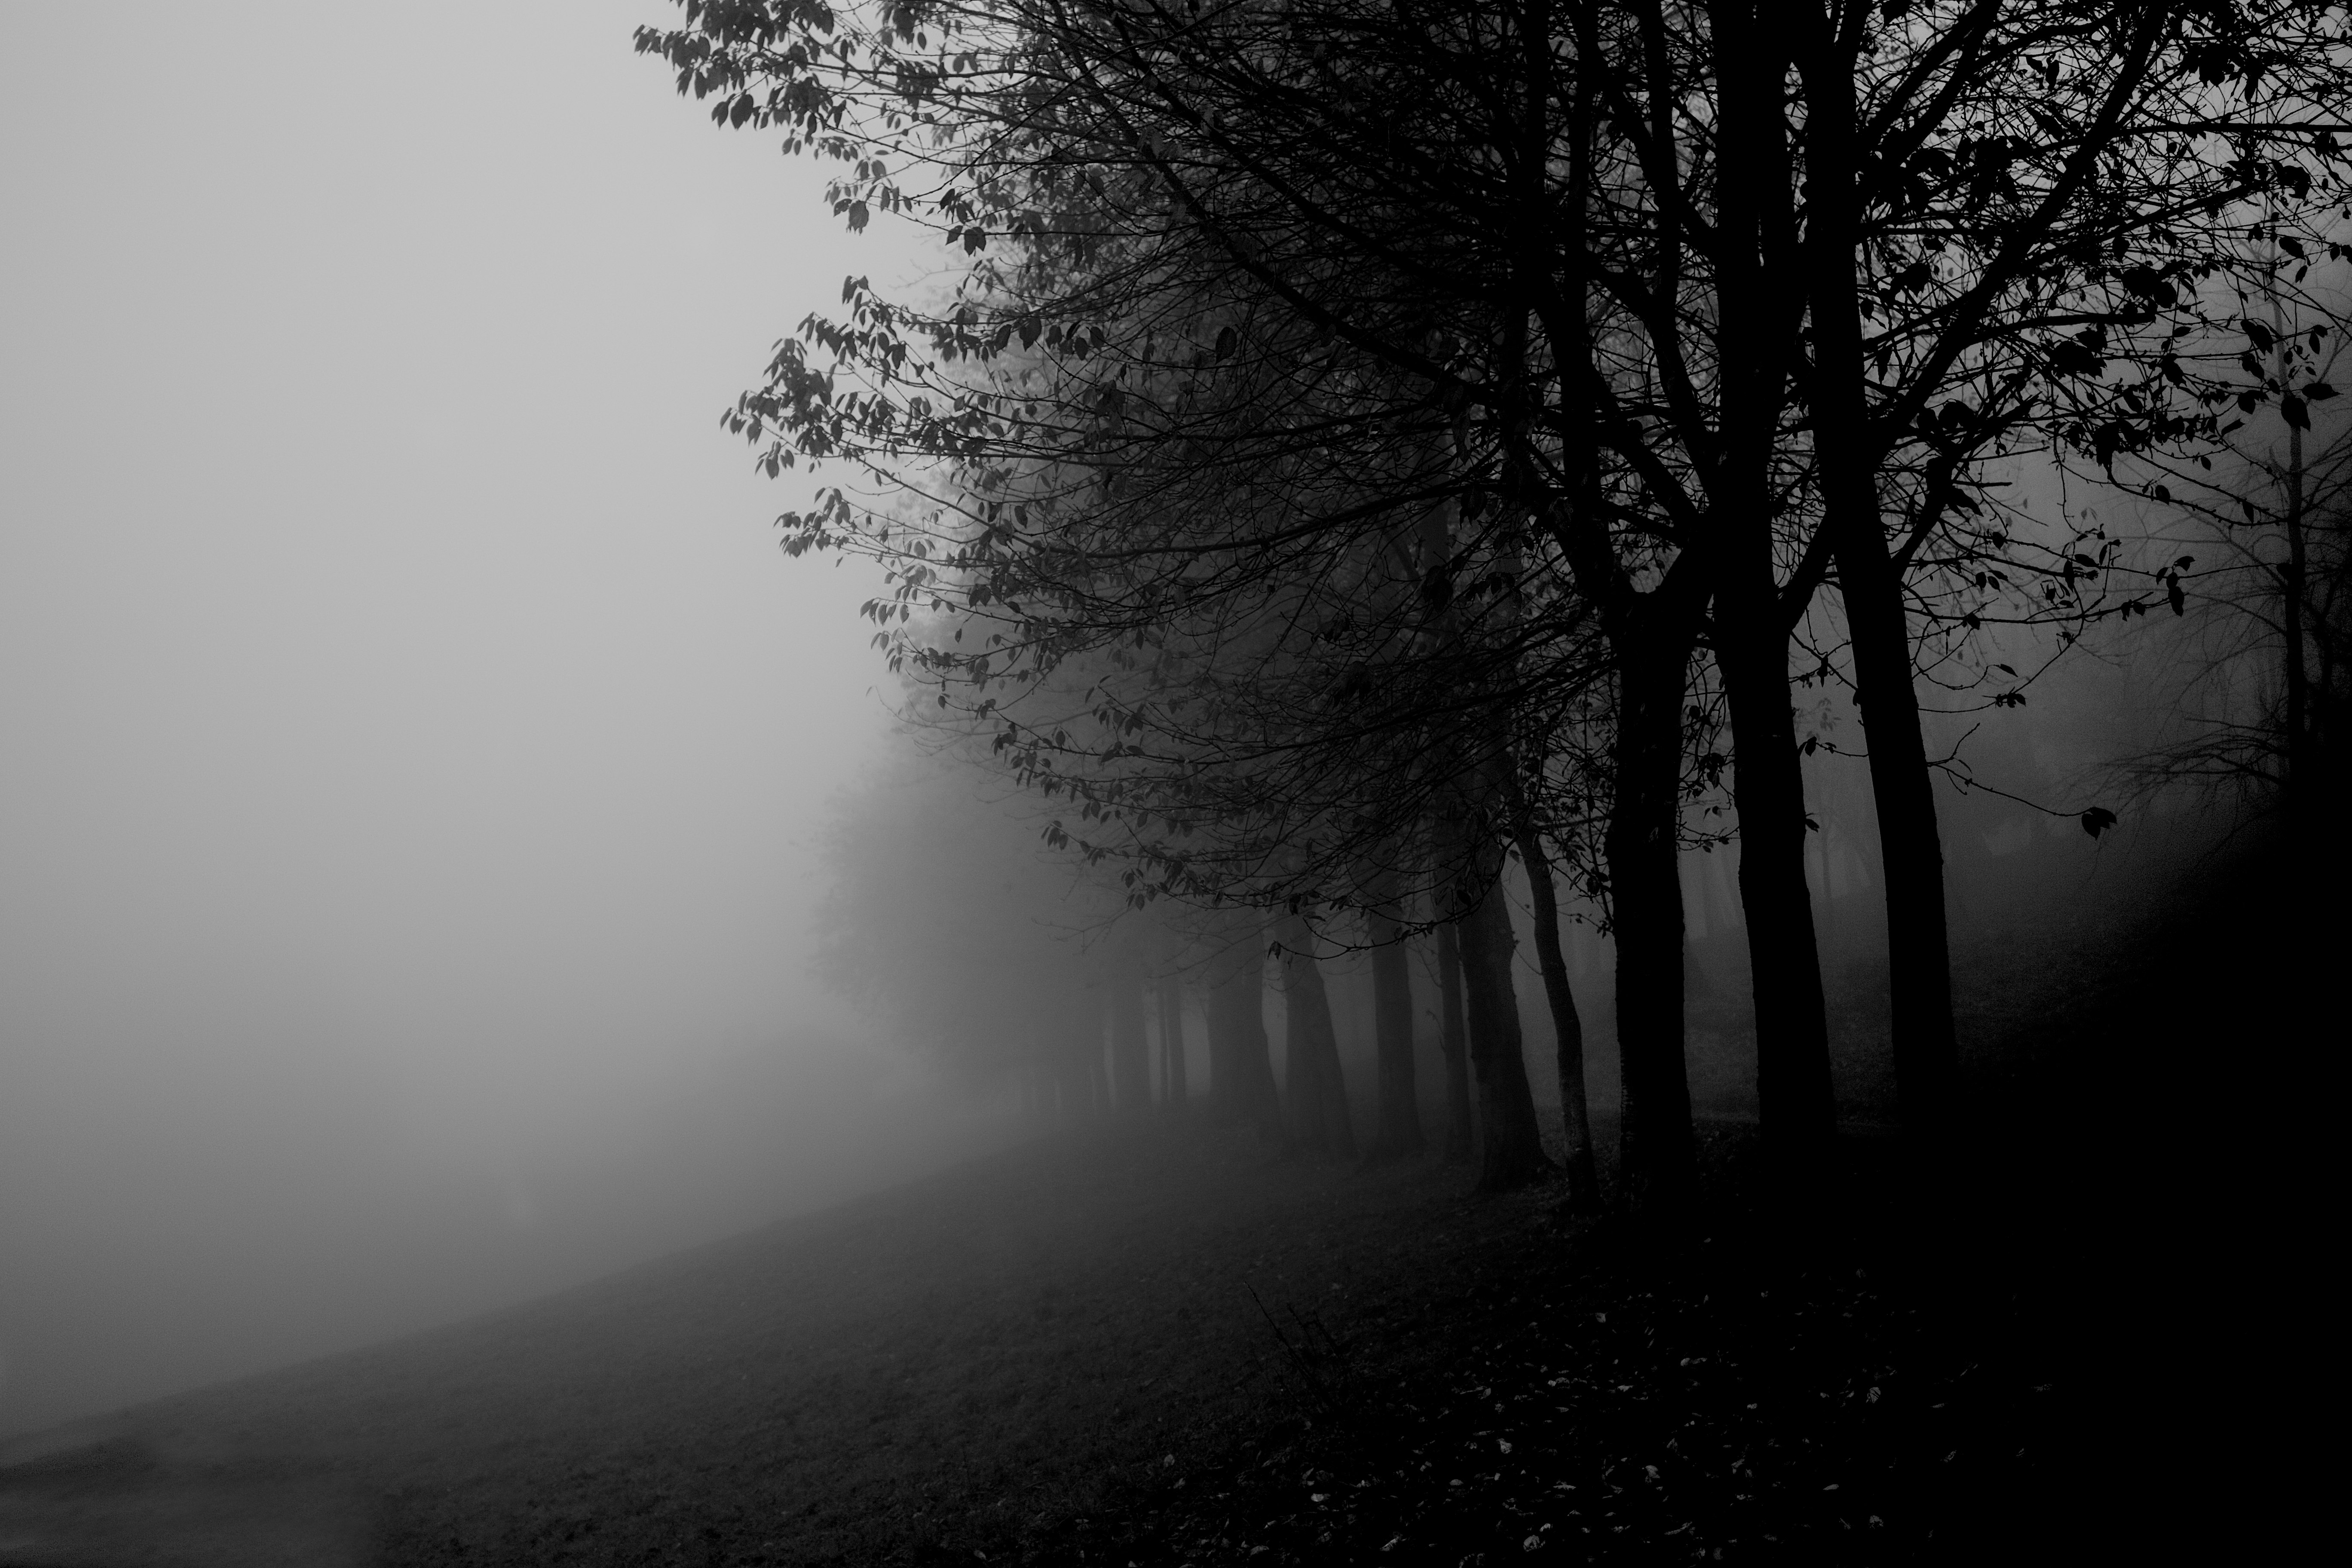 Mysterious mist.